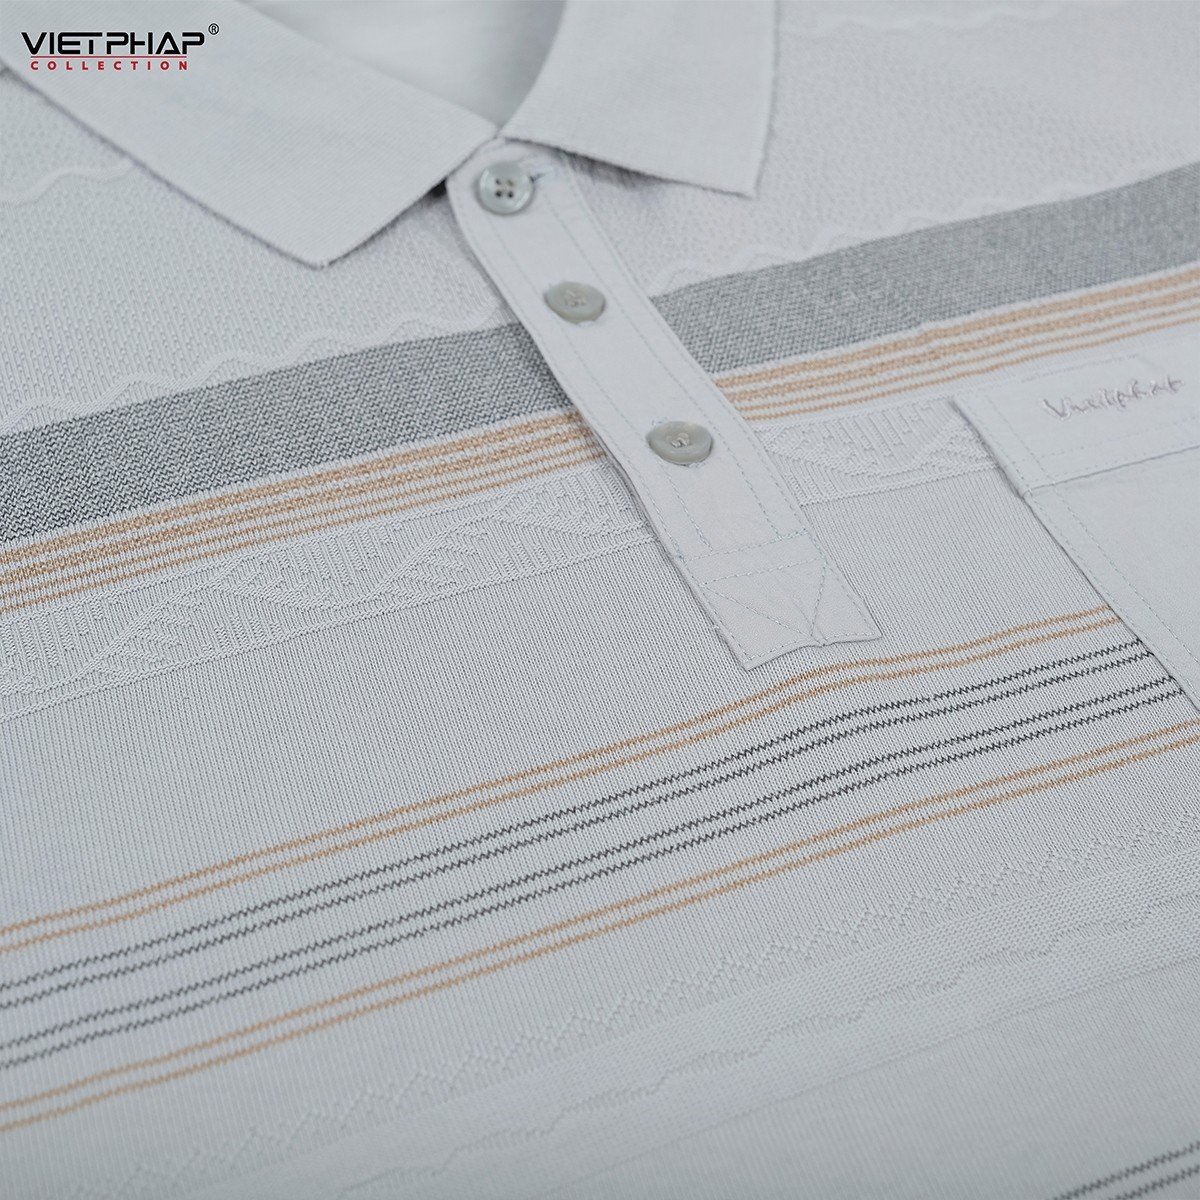 Áo Thun Dệt Kim Cao Cấp VIỆT PHÁP / Form Suông - chất liệu cotton co dãn và thấm hút mồ hôi tốt 35810